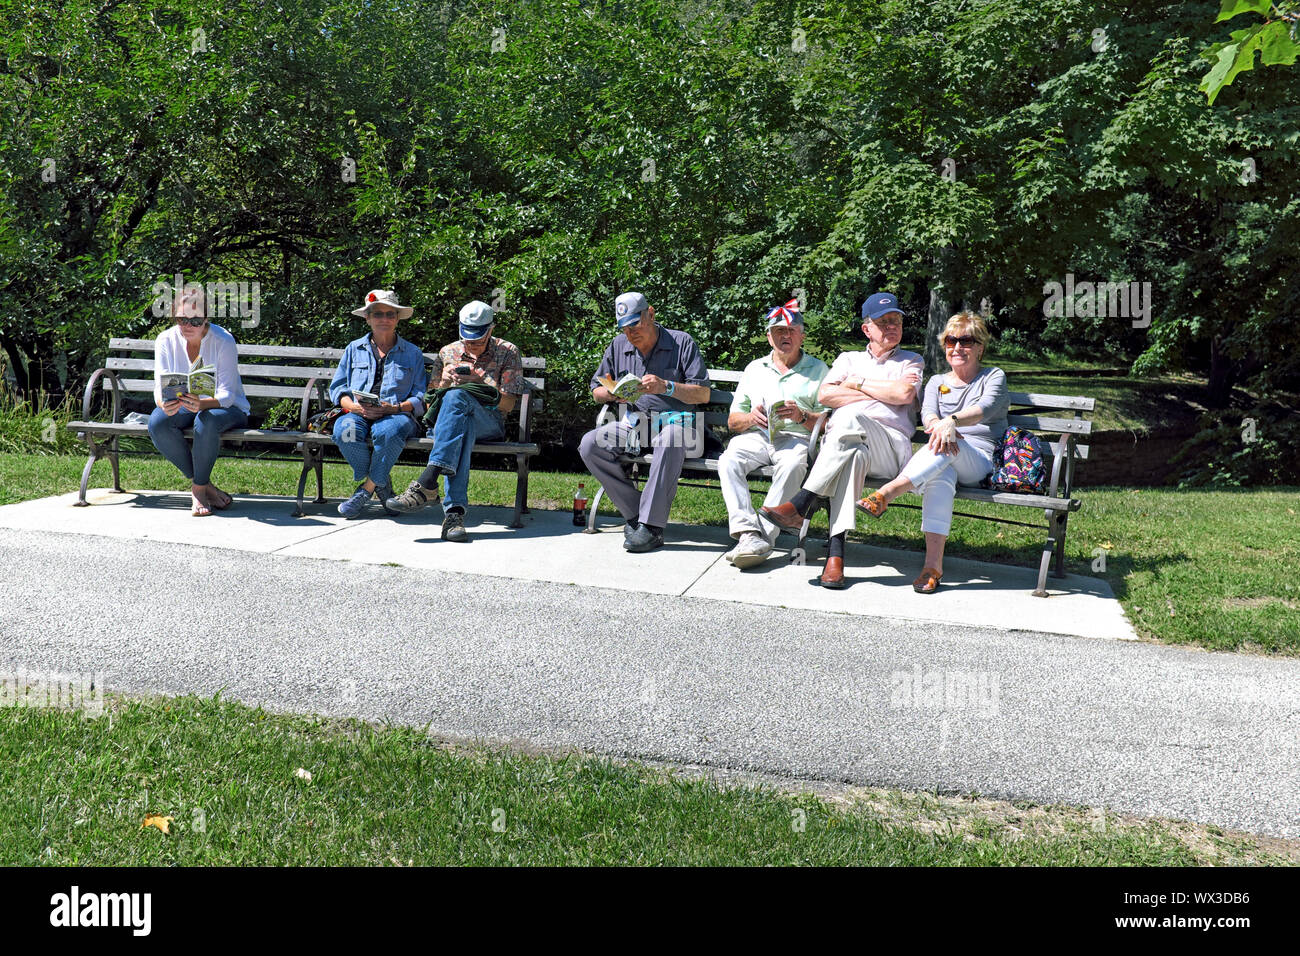 Sette persone, uno più giovani e per il resto i vecchi, condividere panchine nei giardini culturale di Rockefeller Park in Cleveland, Ohio, USA. Foto Stock